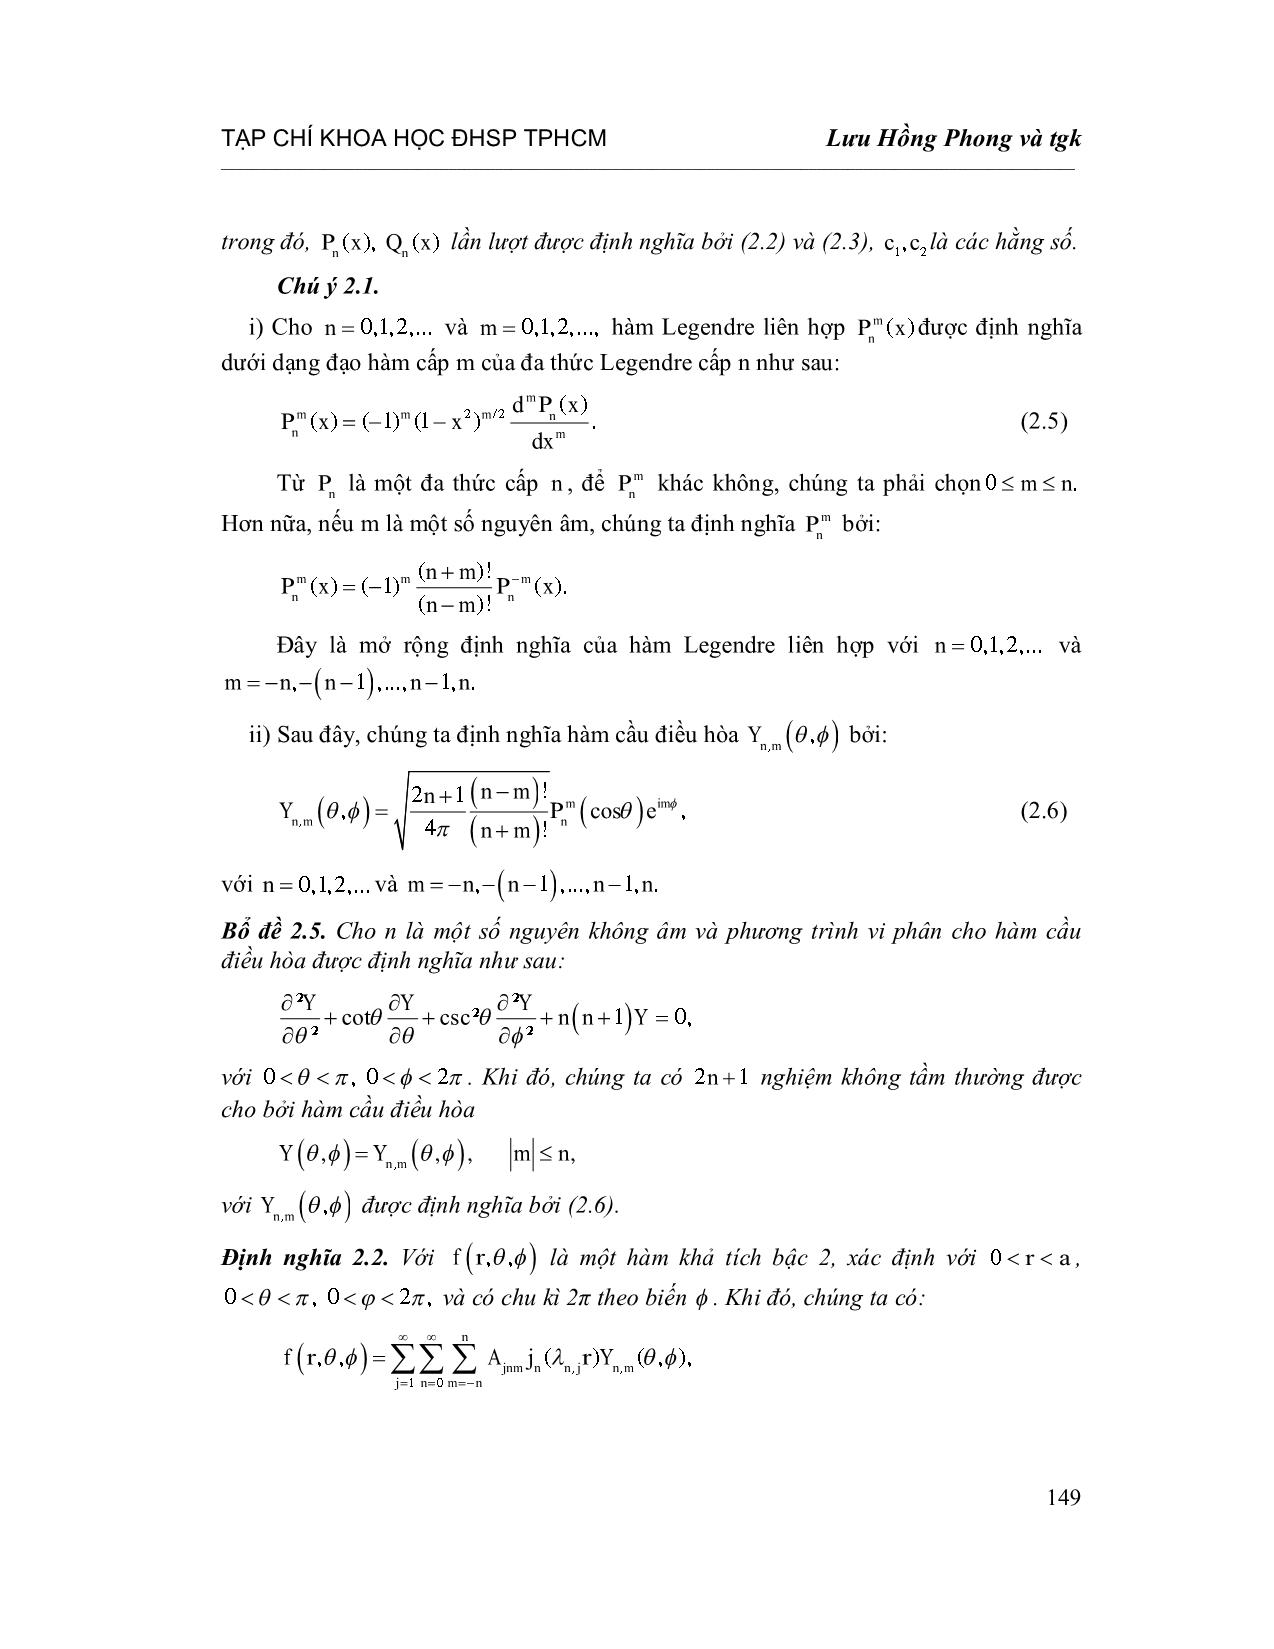 Chỉnh hóa bài toán nhiệt ngược với hệ số phụ thuộc thời gian trong tọa độ cầu trang 5